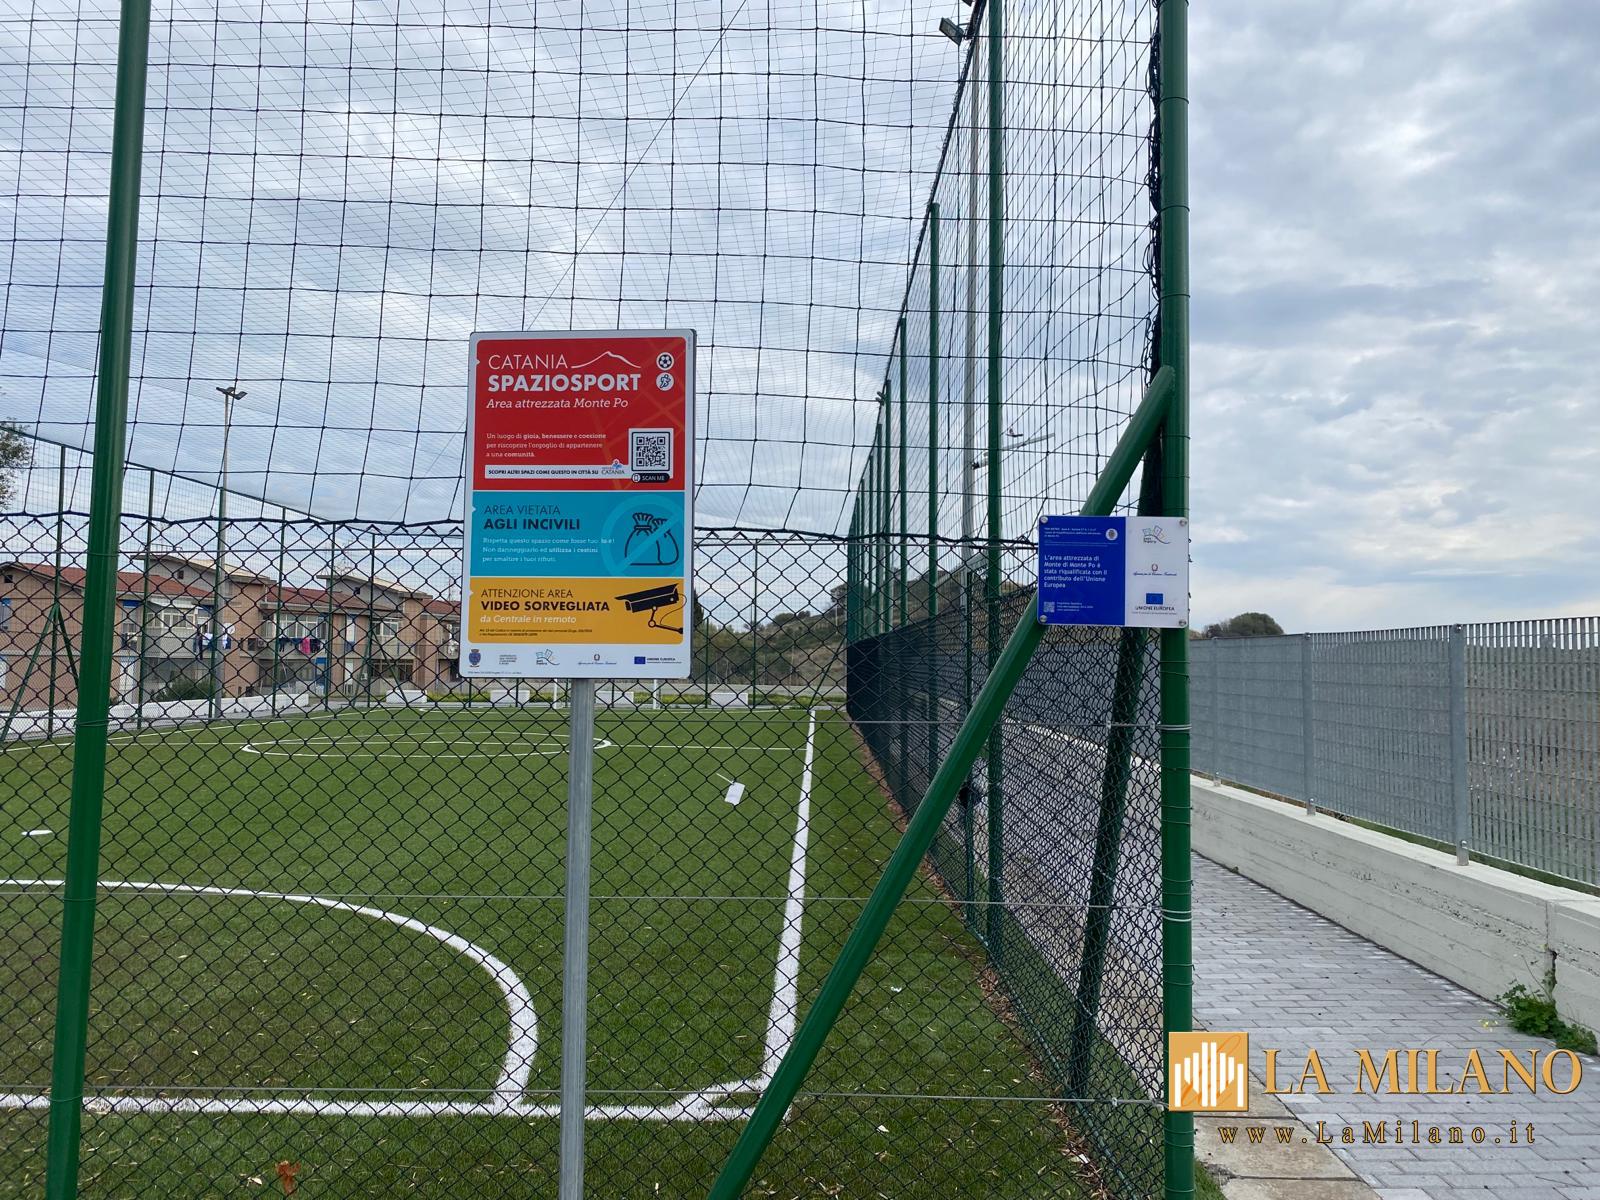 Catania. Spazio Sport, un'altra area attrezzata viene consegnata a Monte Po. Uno spazio polivalente predisposto a più attività.